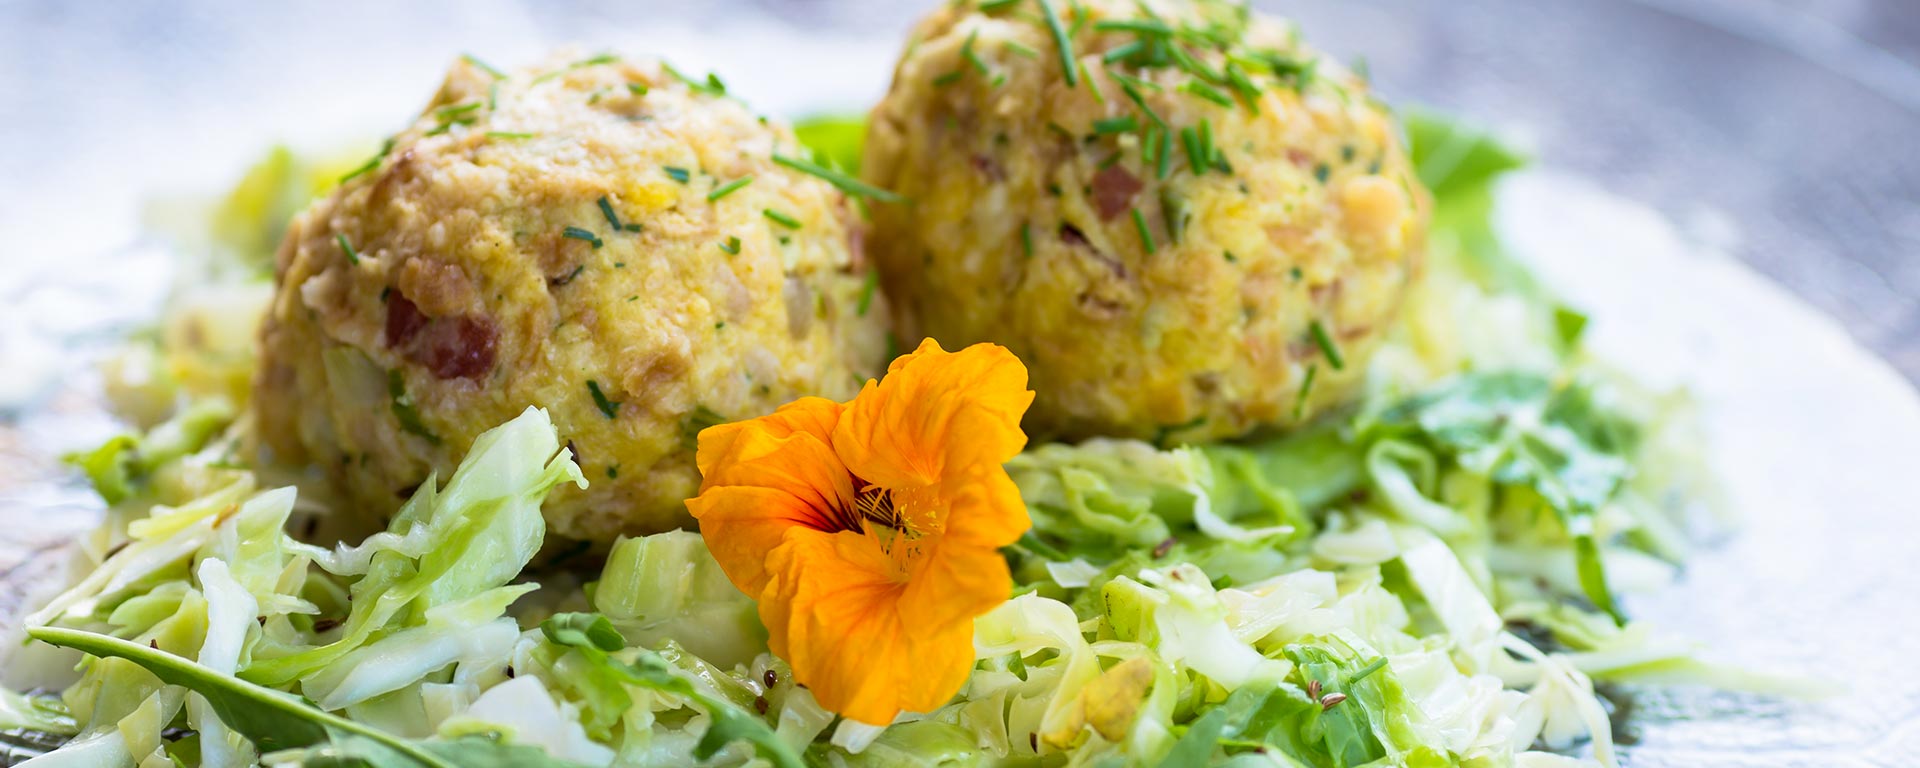 Un gustoso piatto di canederli allo speck, un tipico piatto della cucina ladina, con letto d'insalata di cavolo capuccio e grazioso fiore giallo